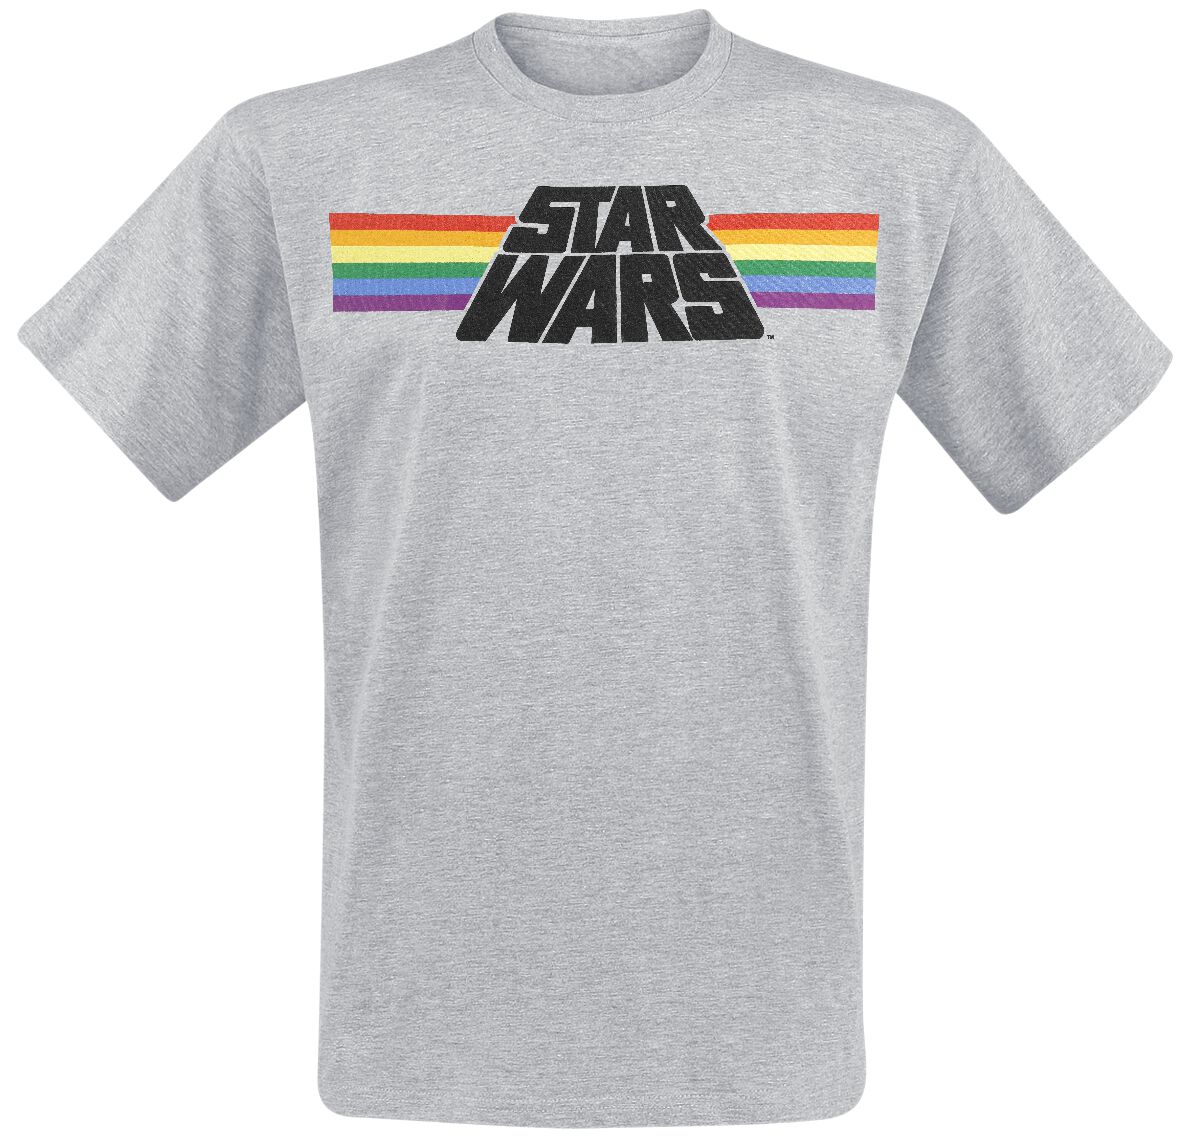 Star Wars T-Shirt - Classic Rainbow - M bis 3XL - für Männer - Größe 3XL - grau meliert  - Lizenzierter Fanartikel